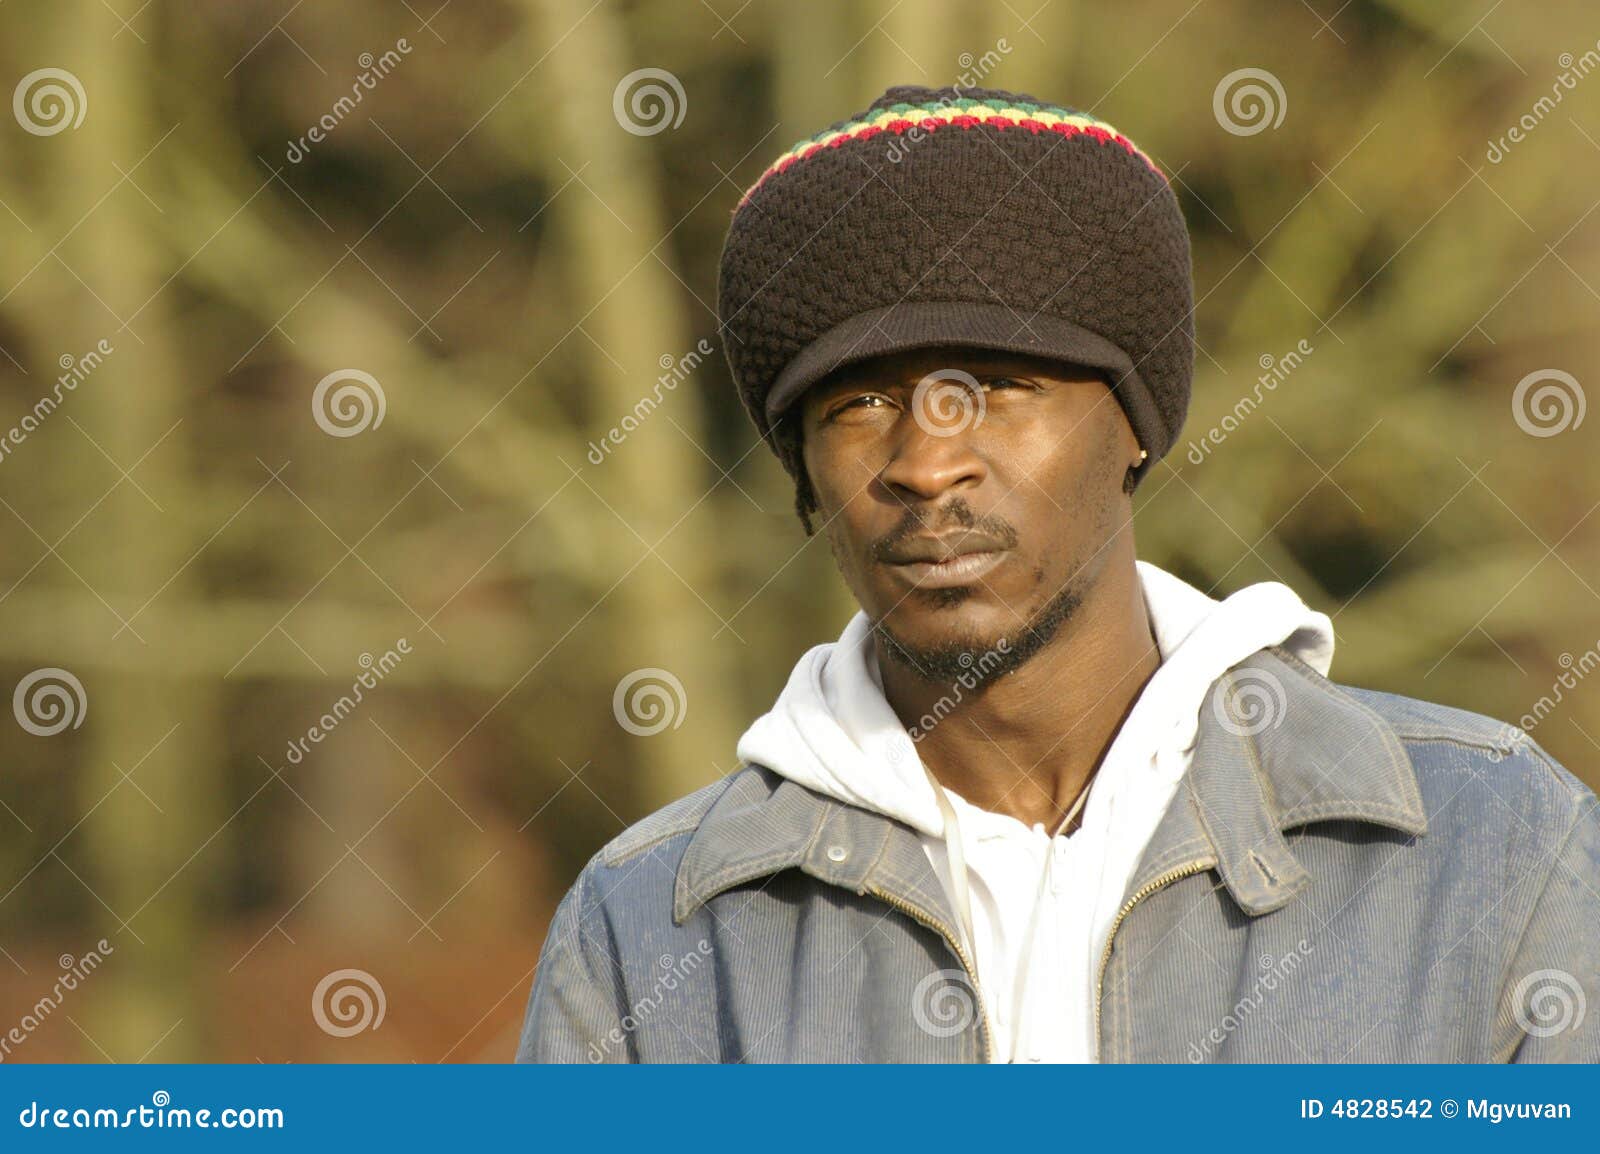 hjælper skyskraber nationalisme Jamaican hat and portrait stock photo. Image of expression - 4828542